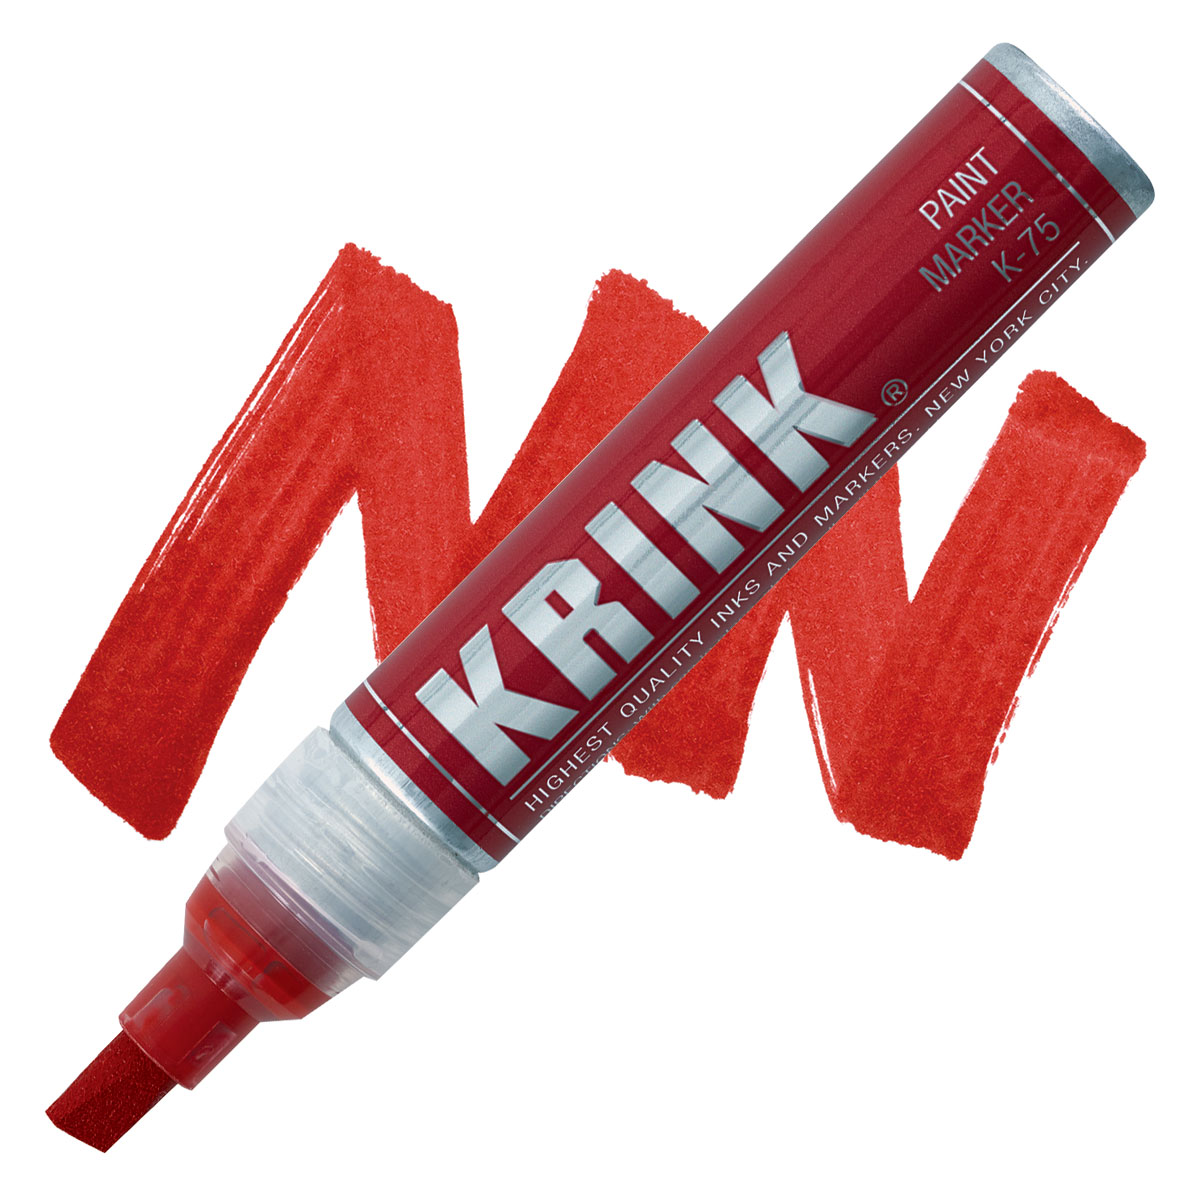 Krink K-75 - Rotulador de pintura roja, vibrante y opaco para cualquier  superficie, marcadores de graffiti permanentes, marcadores de pintura con